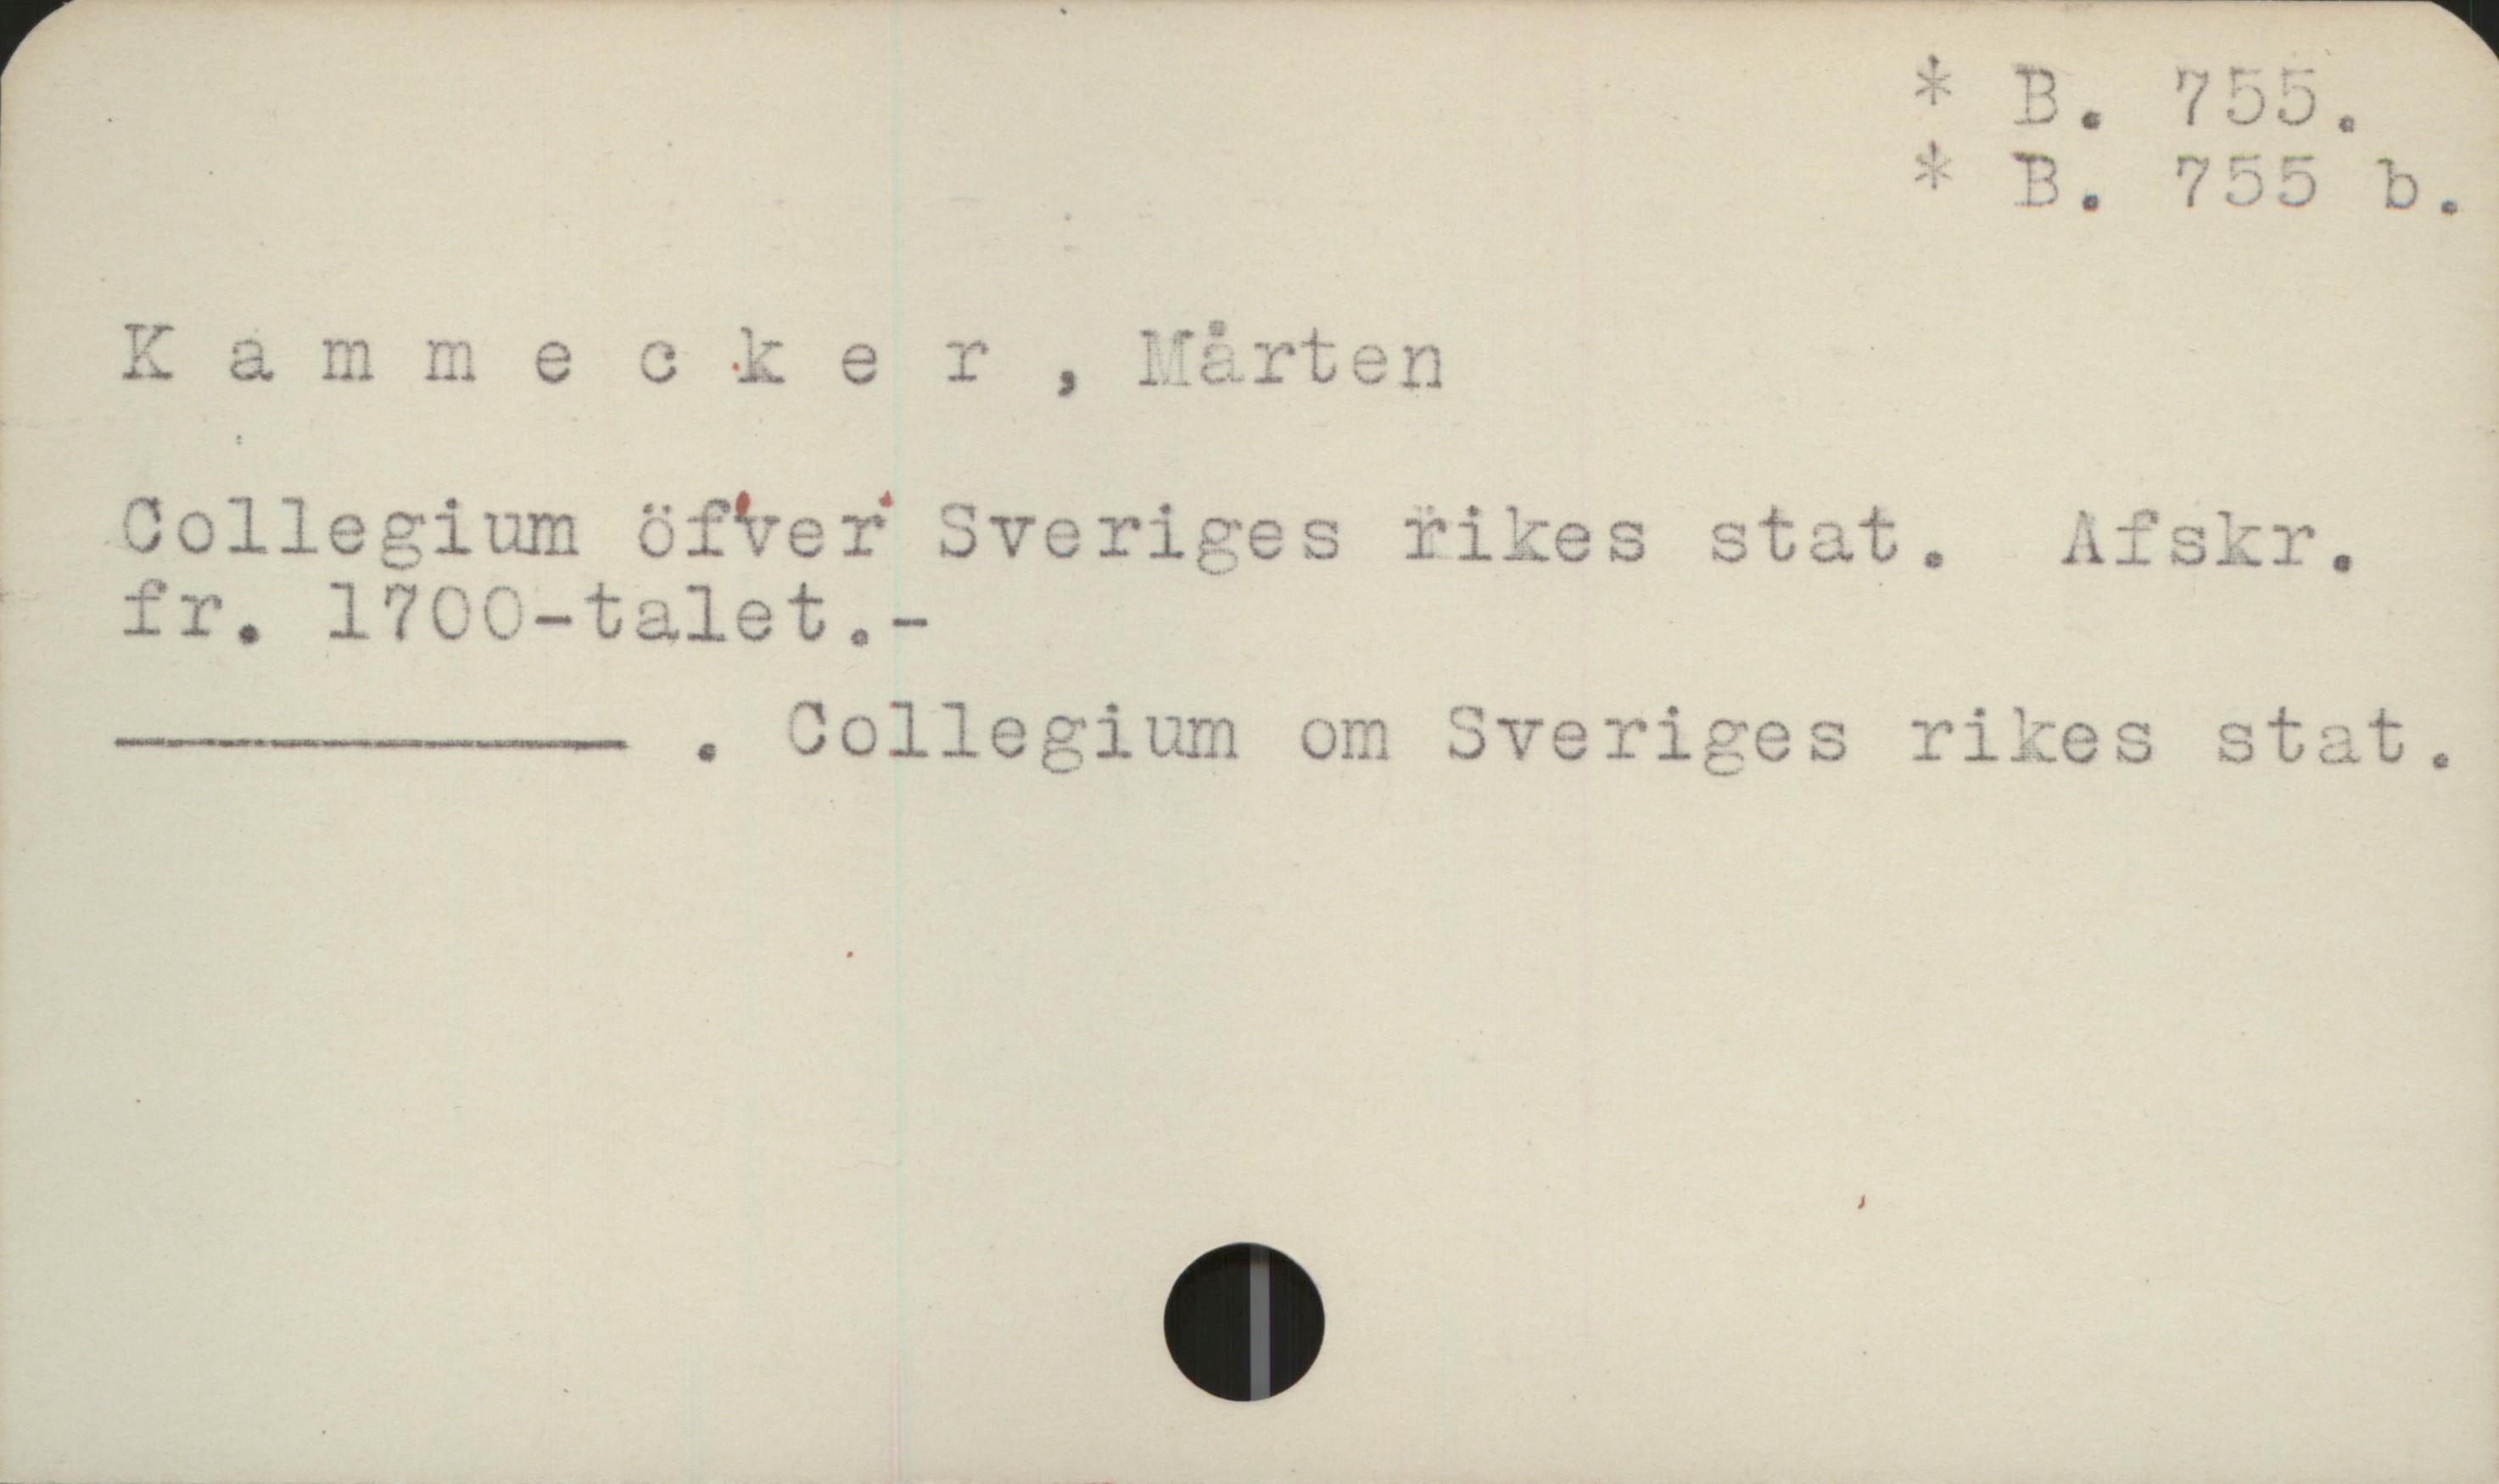  få å ] _ * B. 785.
. i i * p. 755 P,
K & mmecker , Mårten '
Collegium öfver Sveriges vikes stat, Afskr.
-ne eo om Sveriges rikes stat.

